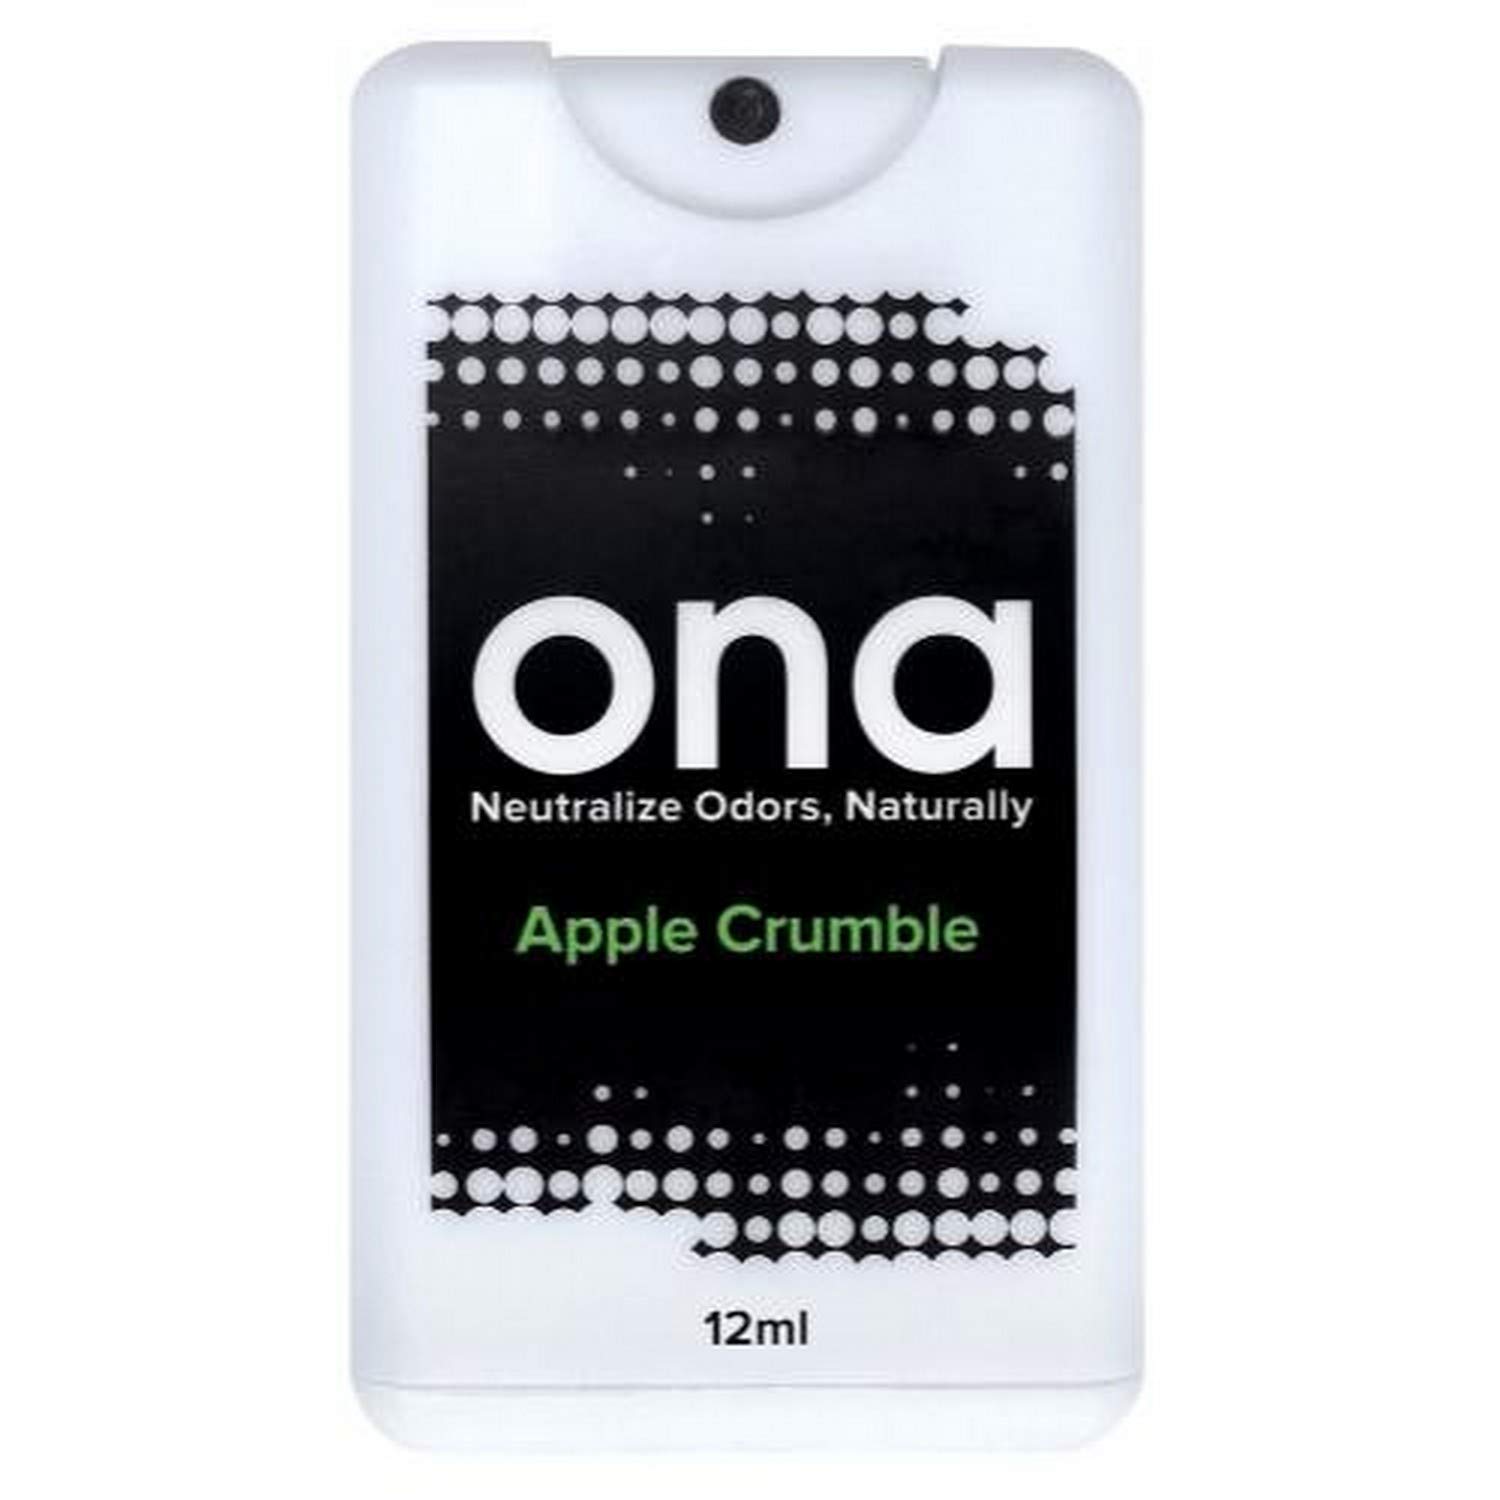 ONA CARD SPRAY APPLE CRUMBLE 12ml